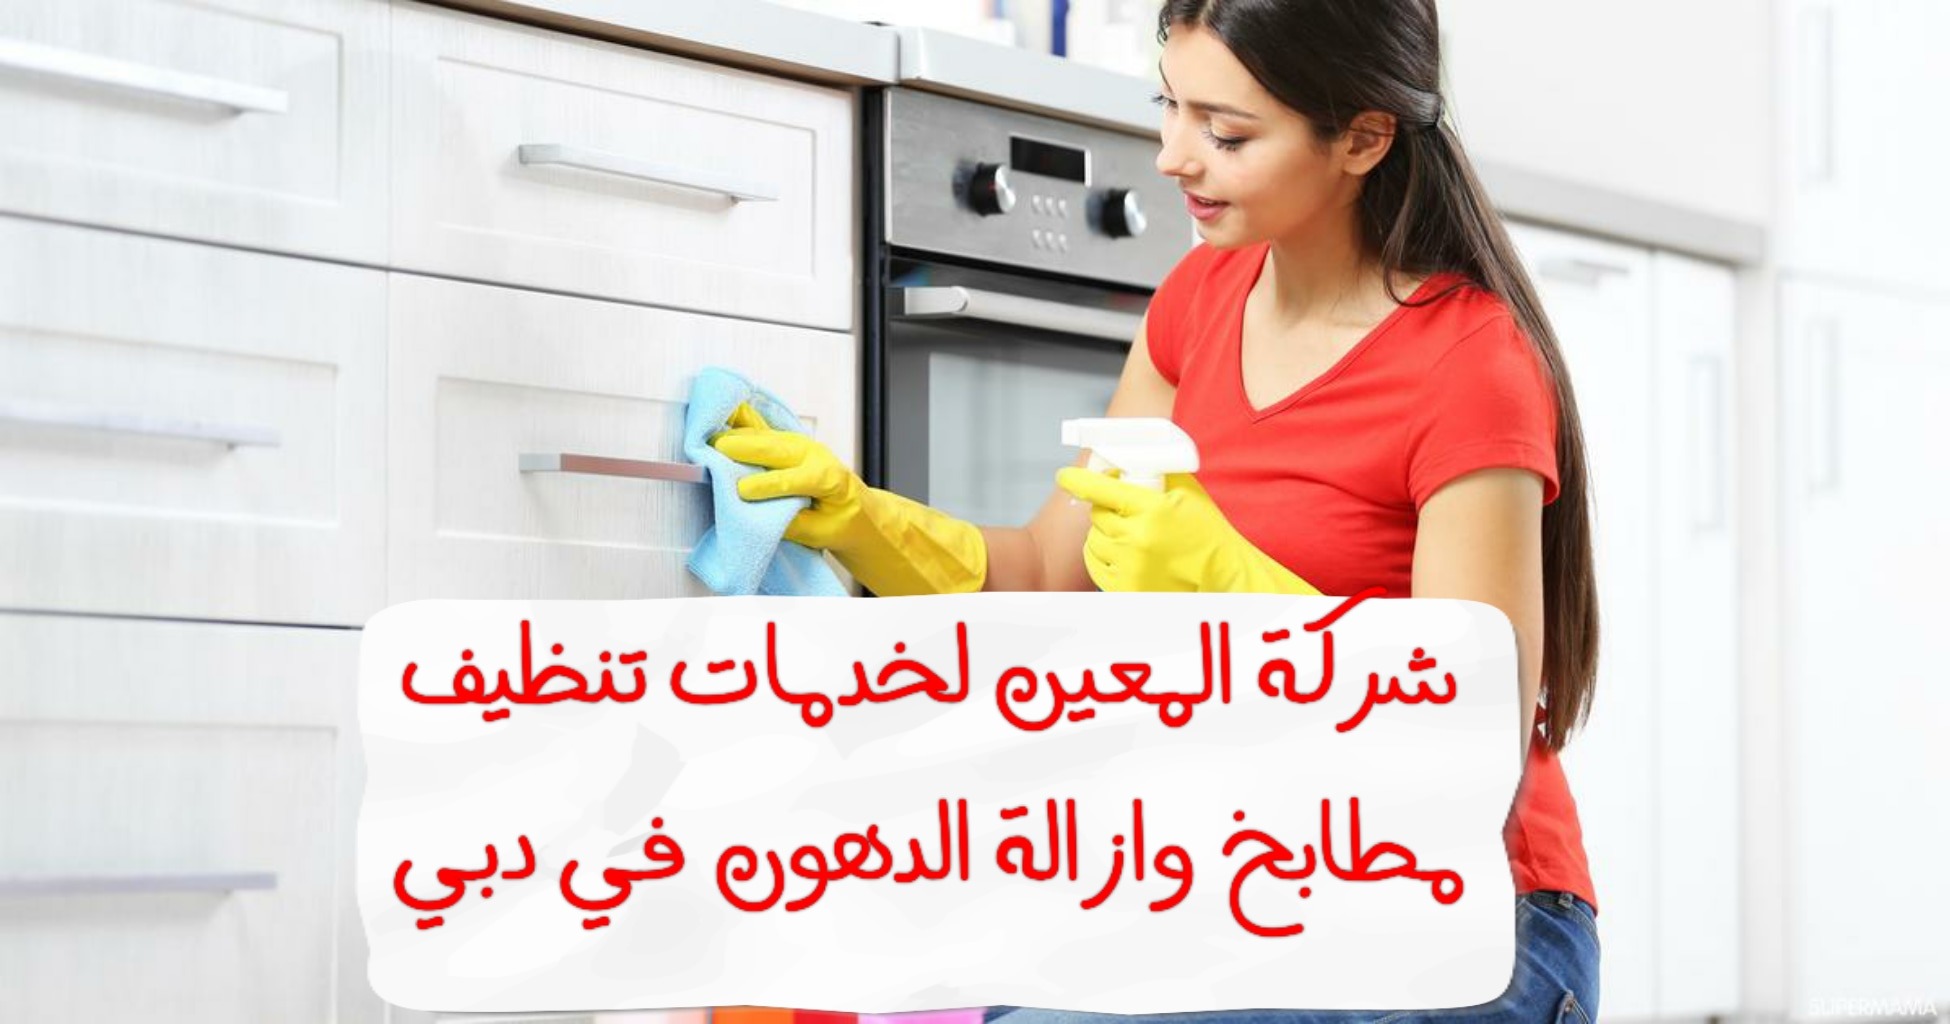 شركة المعين لخدمات تنظيف مطابخ و ازاله الدهون في دبي – 0567833266